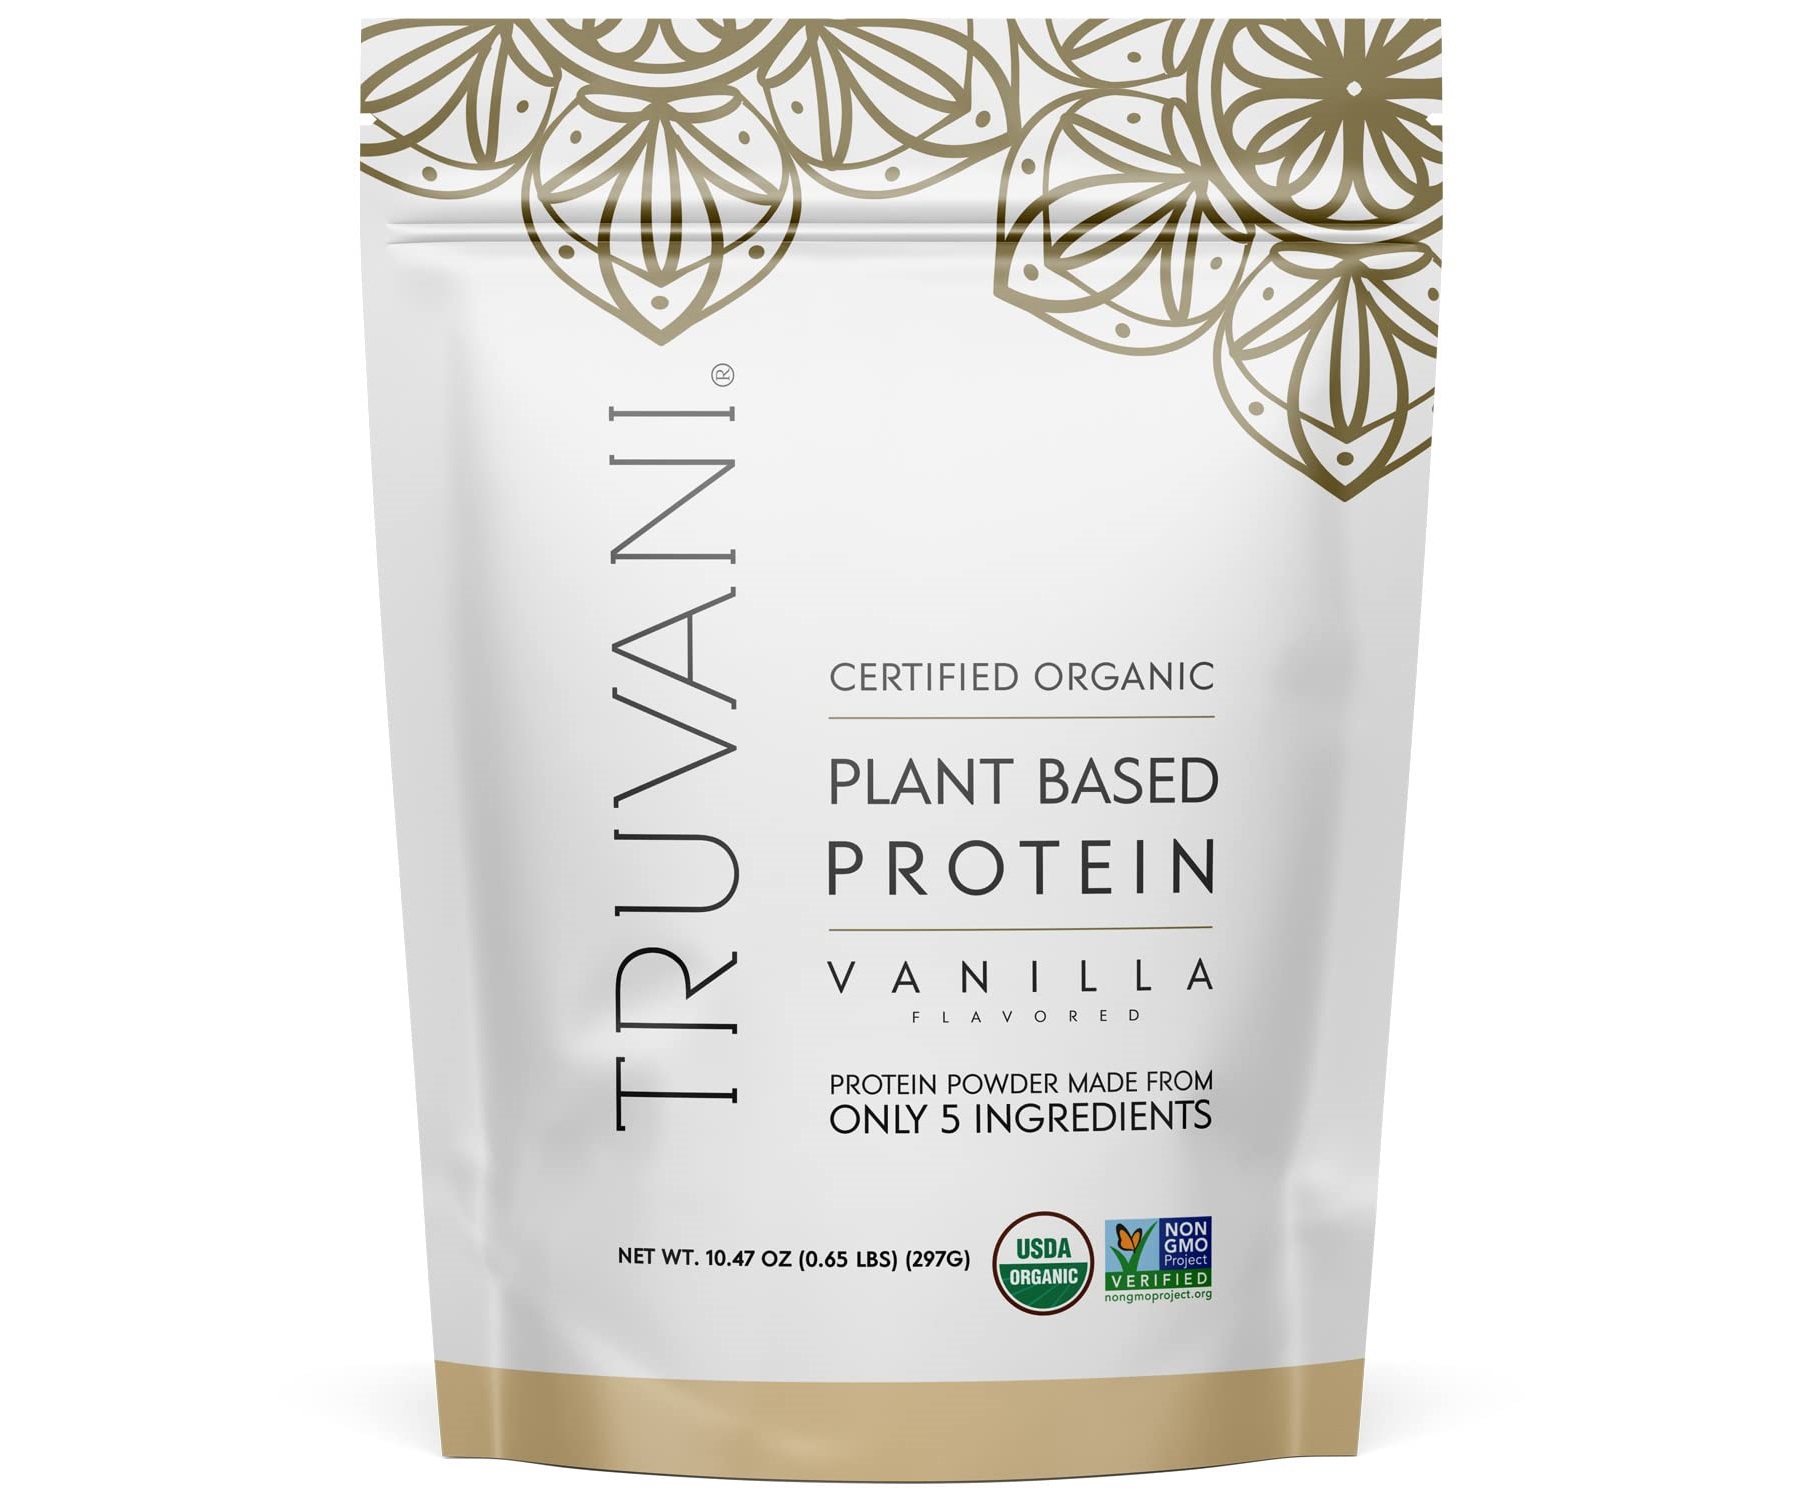 20-truvani-protein-powder-nutrition-facts